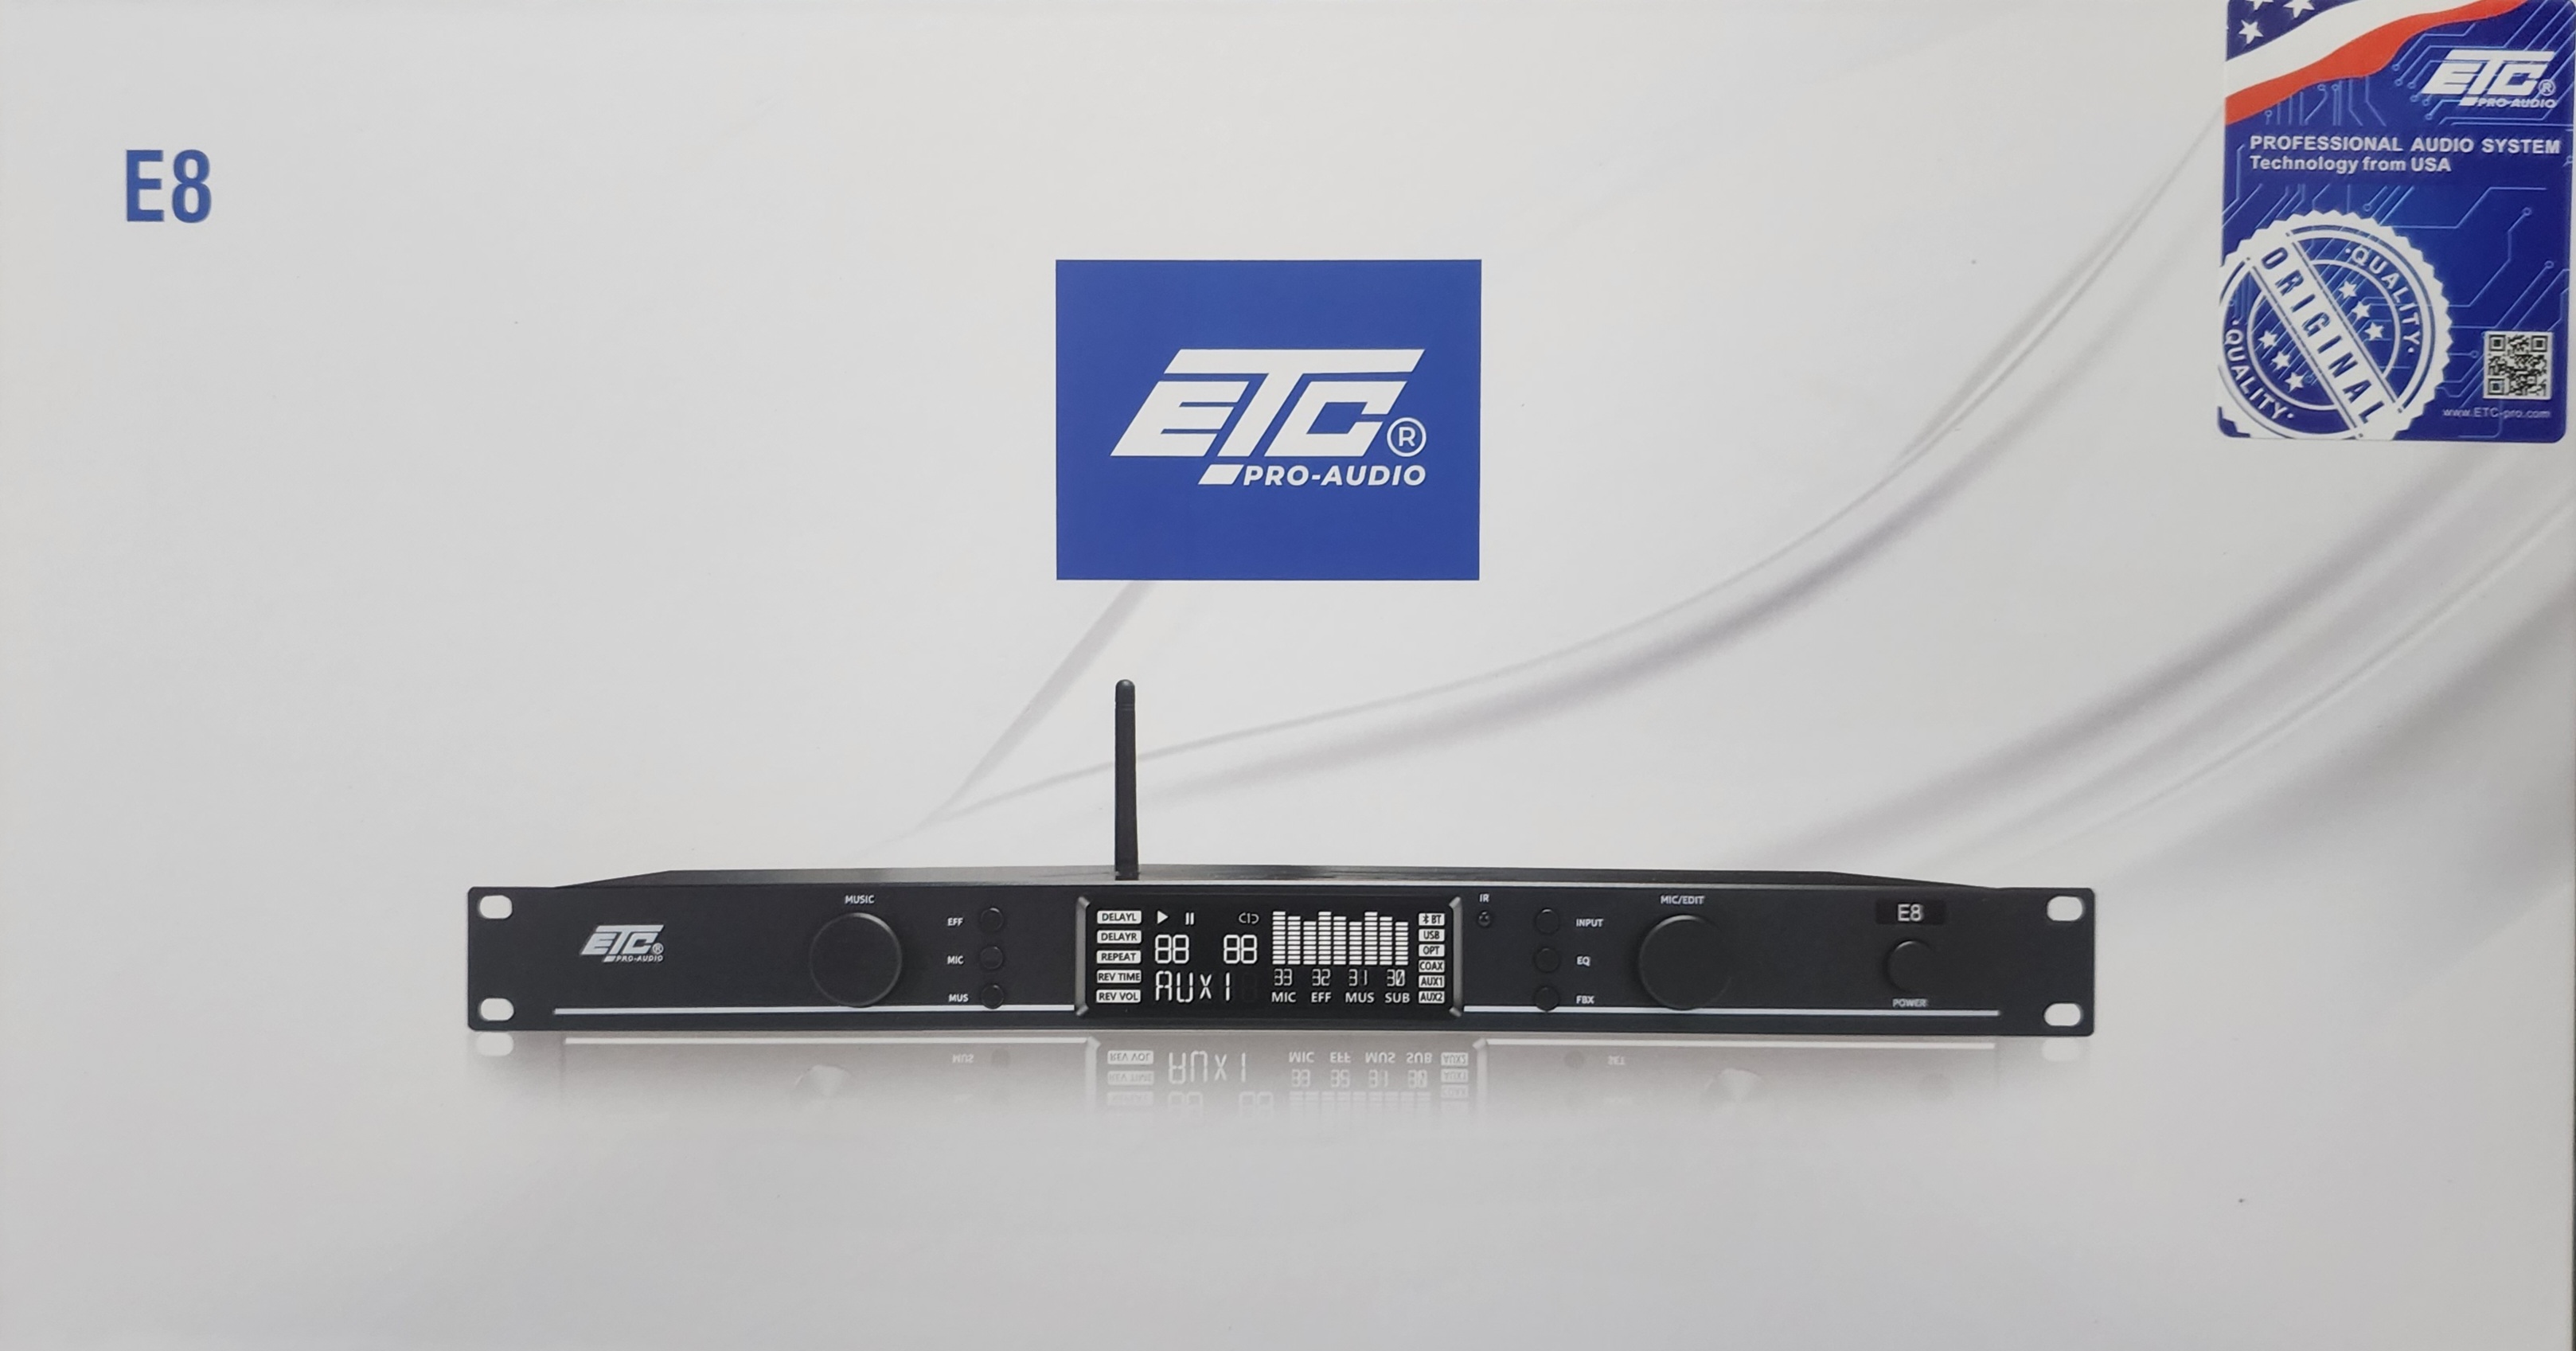 vang cơ lai số ETC cao cấp nhiều chế độ chống hú giải mã âm thanh số cắt sub cổng quang bluetooth